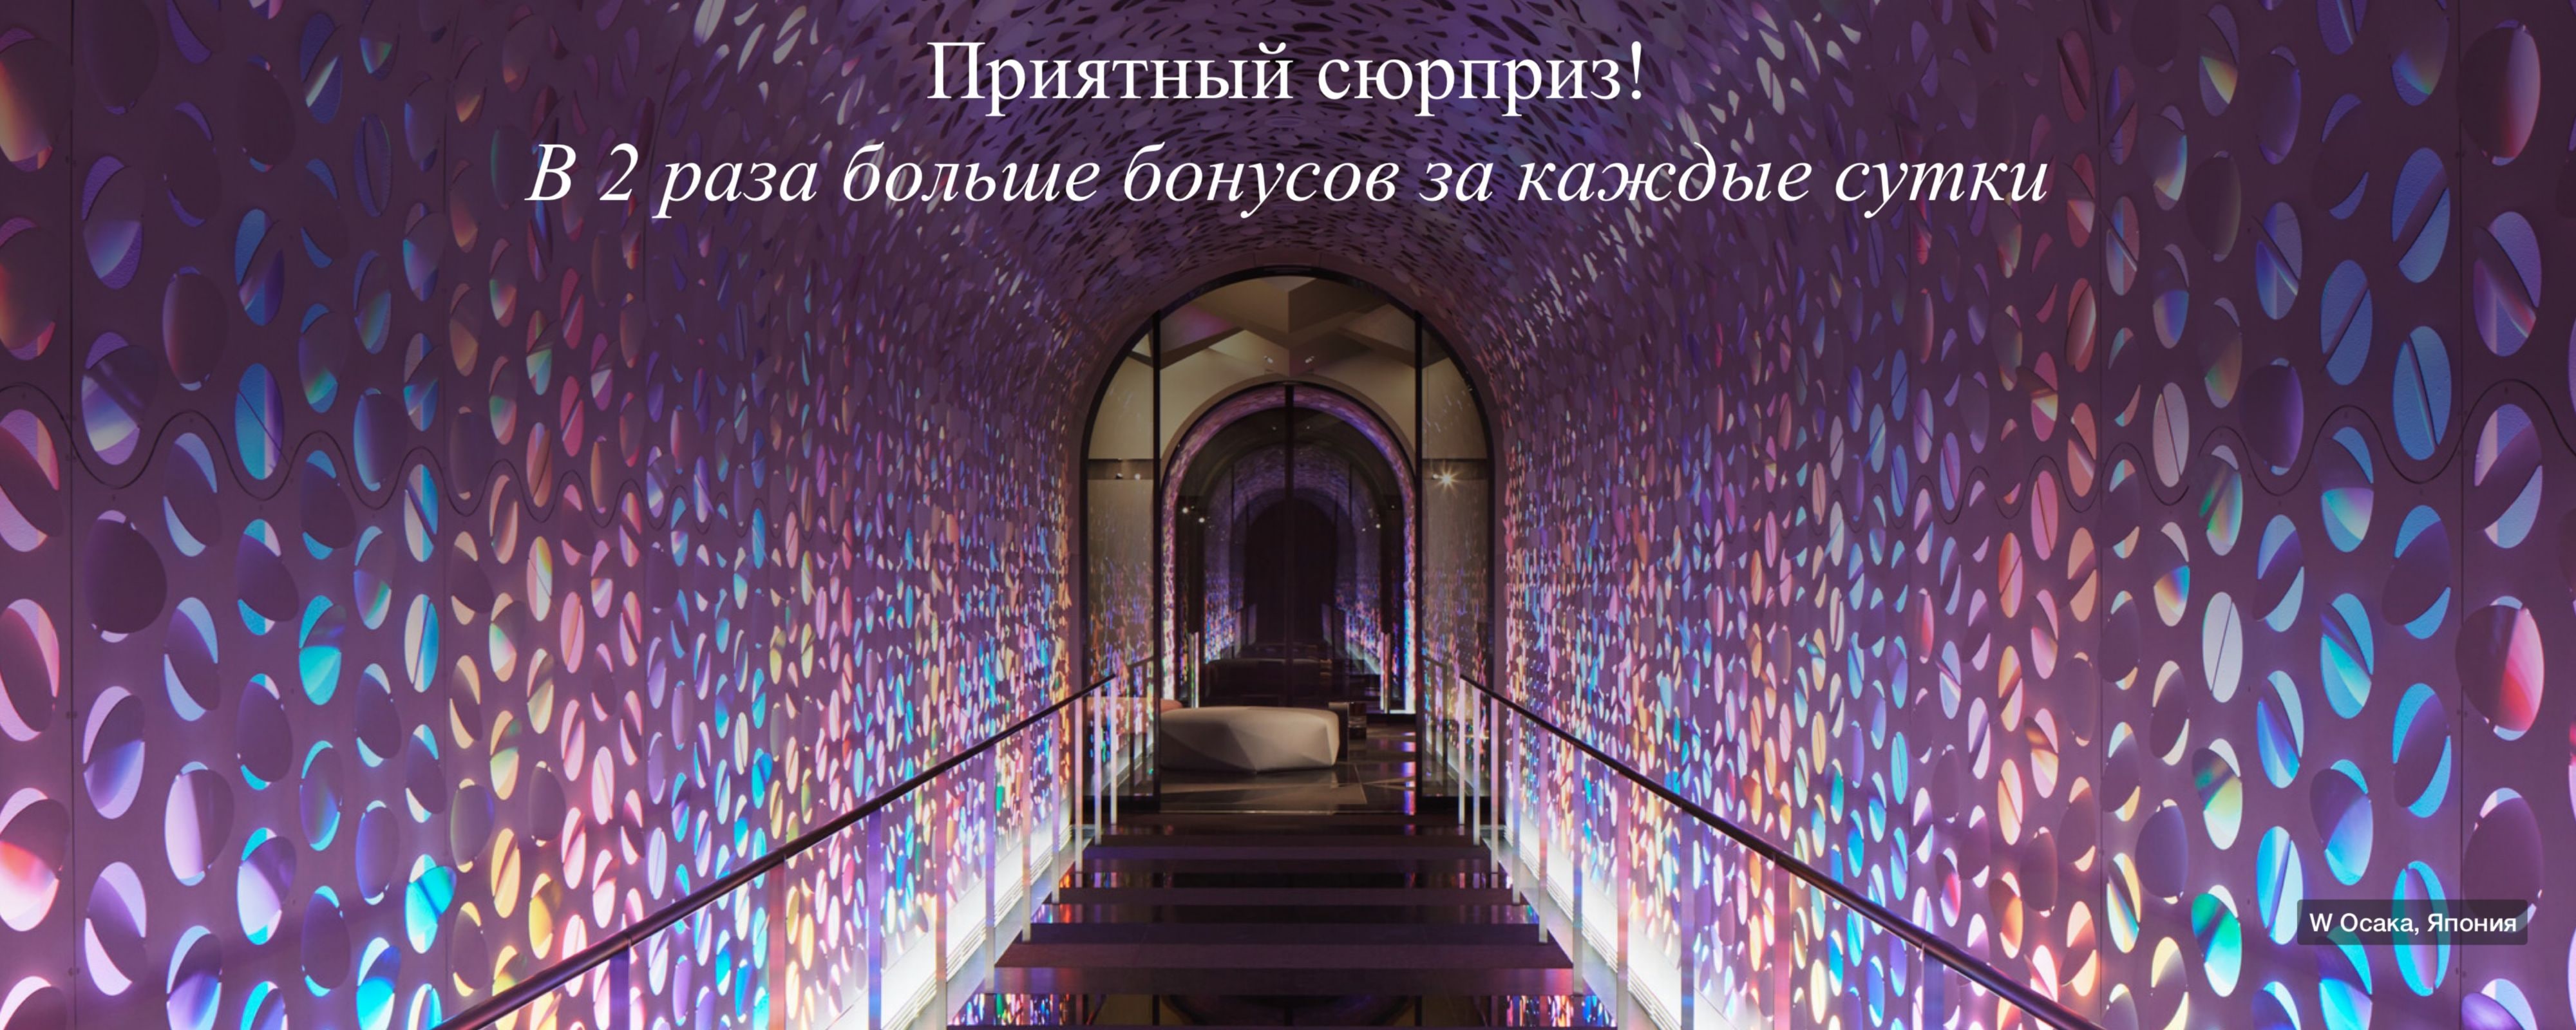 Арочный коридор в блестящих фиолетовых тонах с подсветкой на заднем фоне.